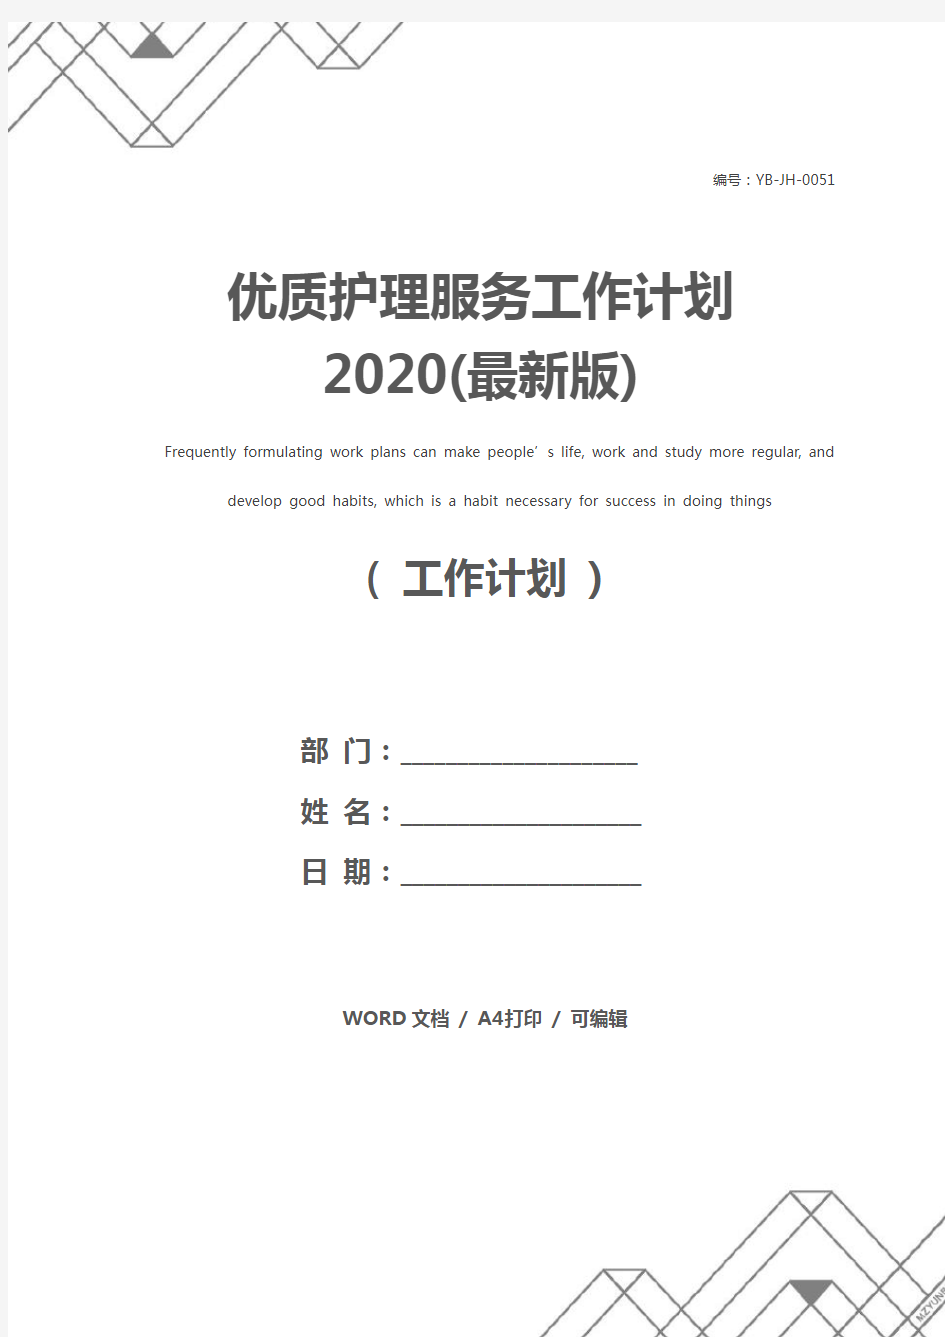 优质护理服务工作计划2020(最新版)